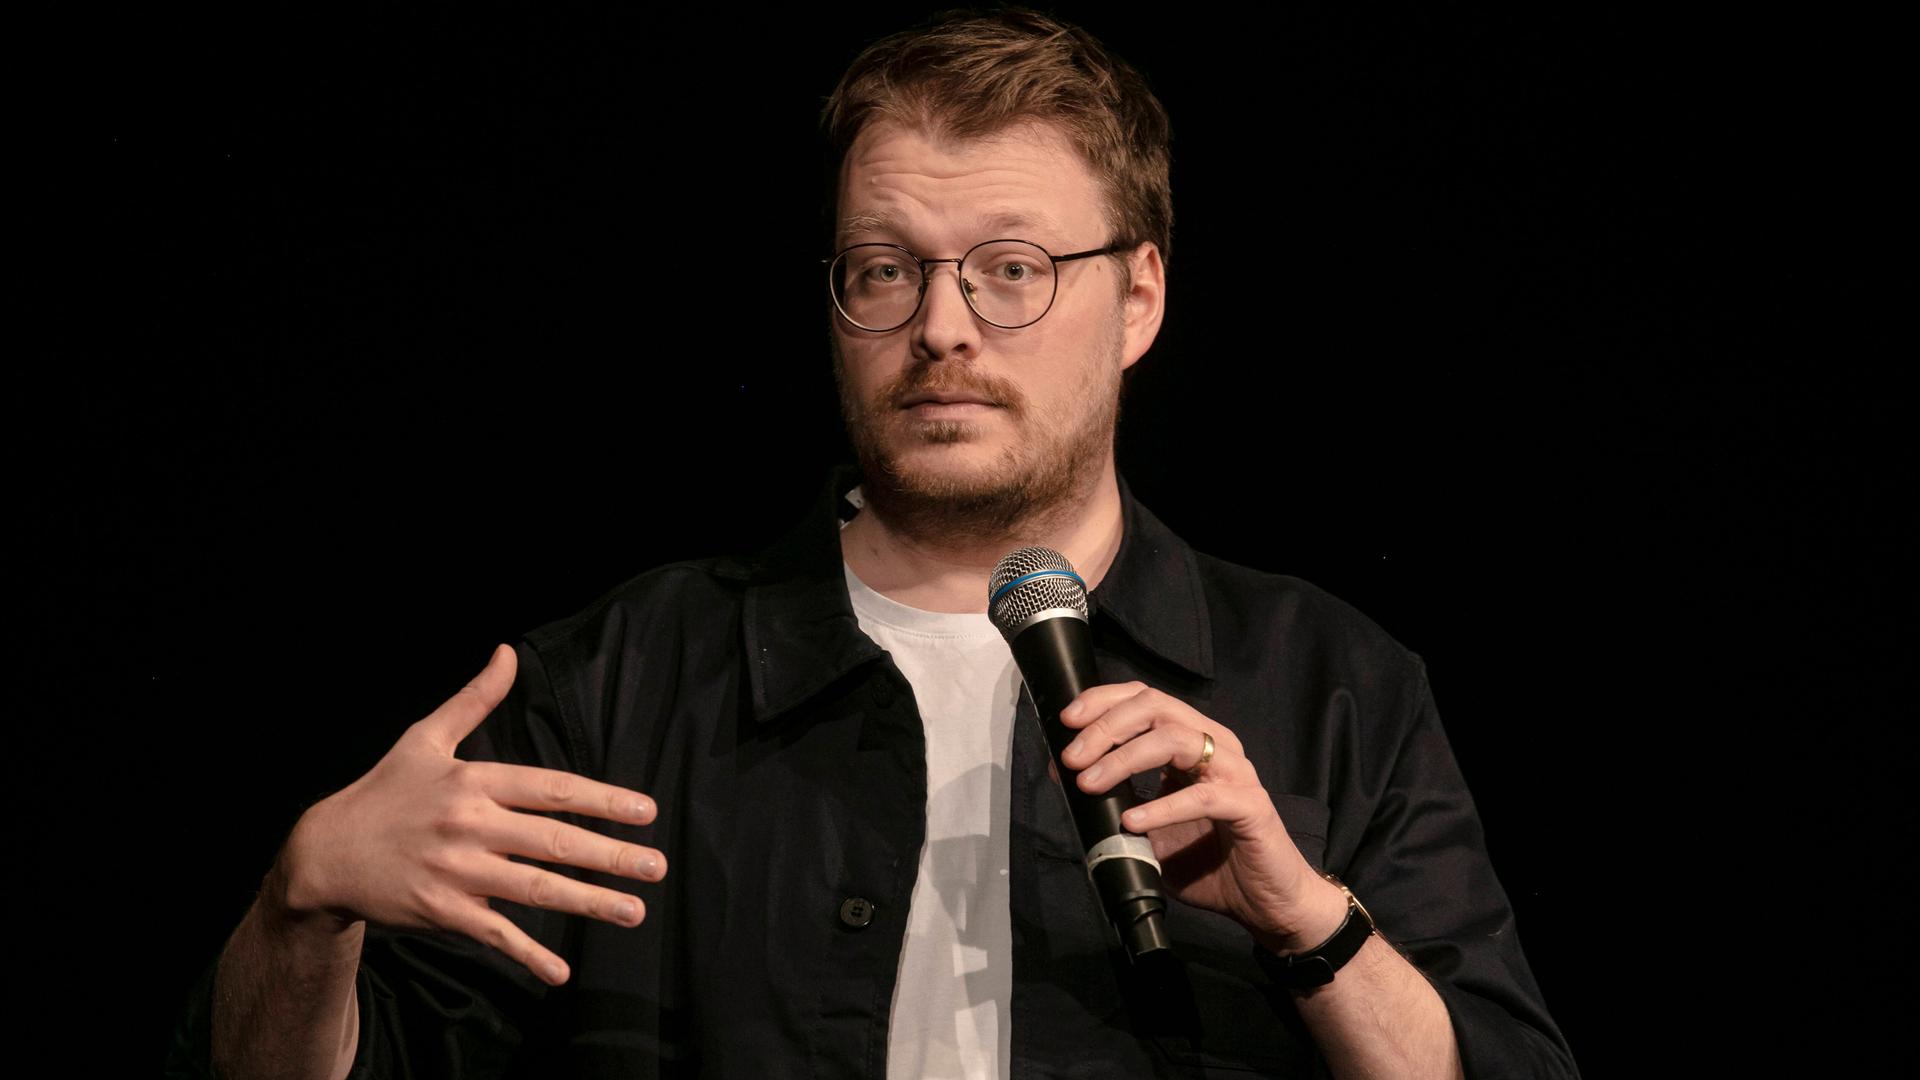 Maxi Gstettenbauer, ein Mann mittleren Alters mit runder Brille, dunkelblondem Haar und Dreitagebart steht auf einer Bühne.